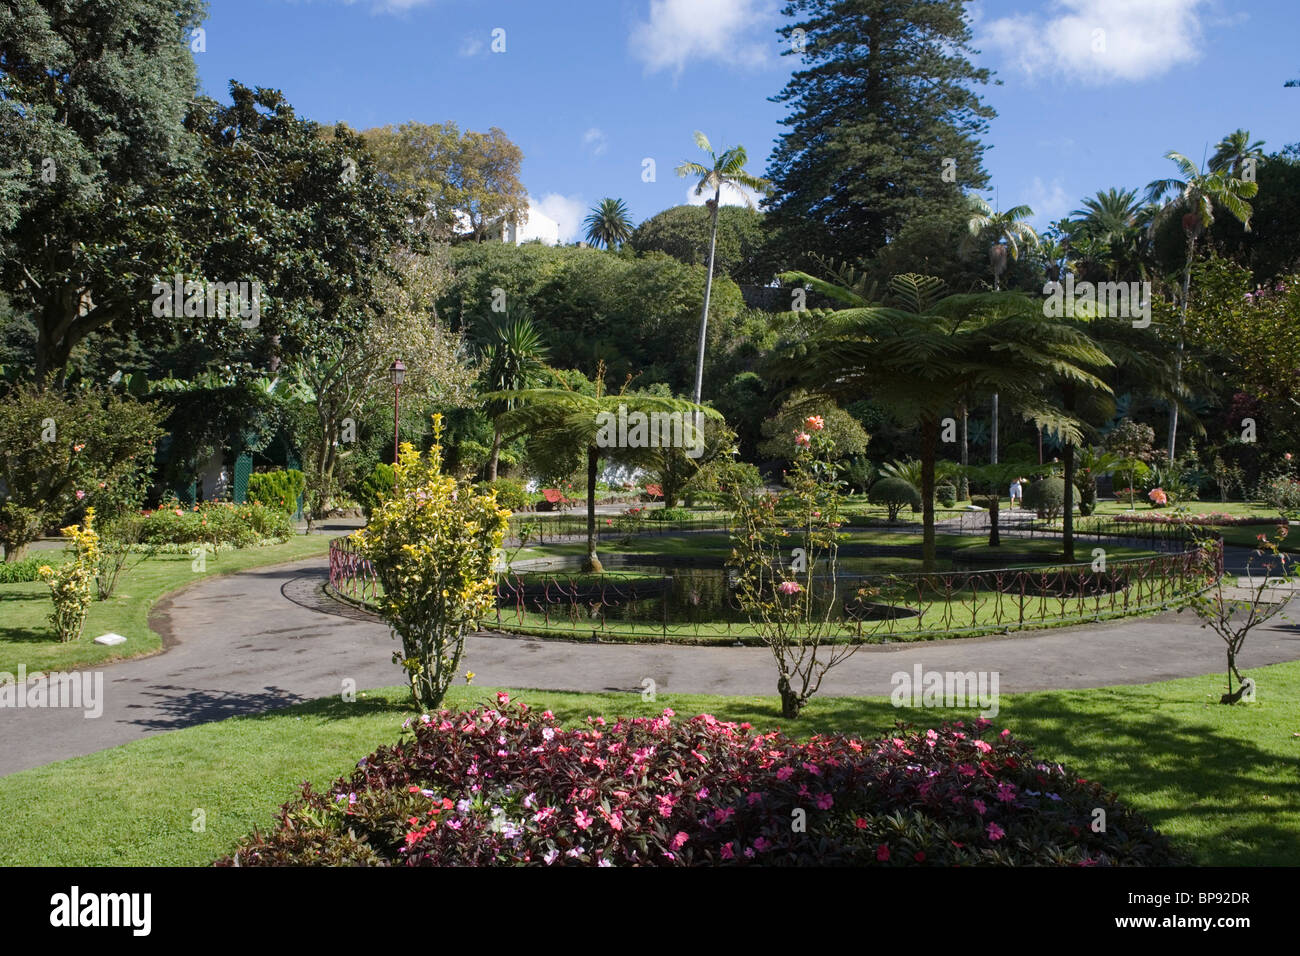 City Park, Angra do Heroismo, Terceira Island, Azores, Portugal, Europe Stock Photo